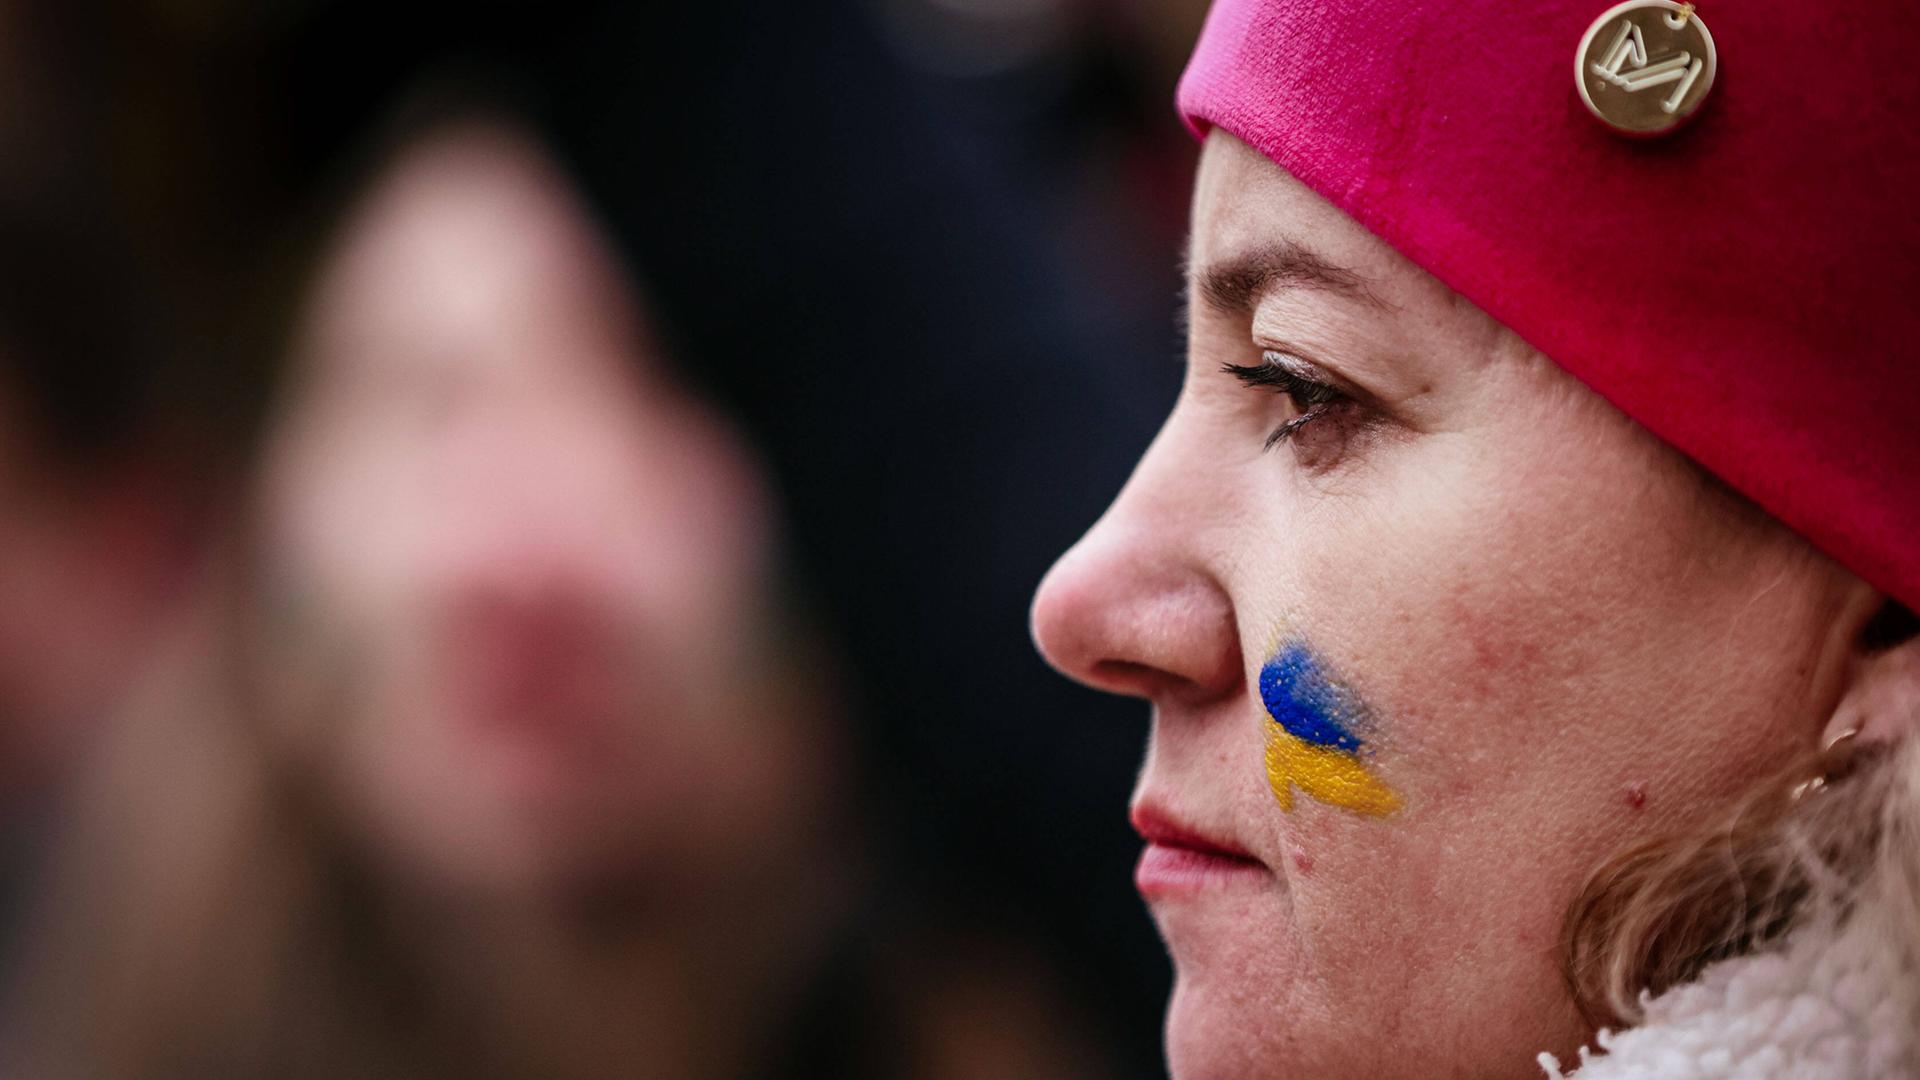 Profil einer Demonstrantin mit einer roten Mütze und einer gemalten ukrainischen Flagge auf der Wange.